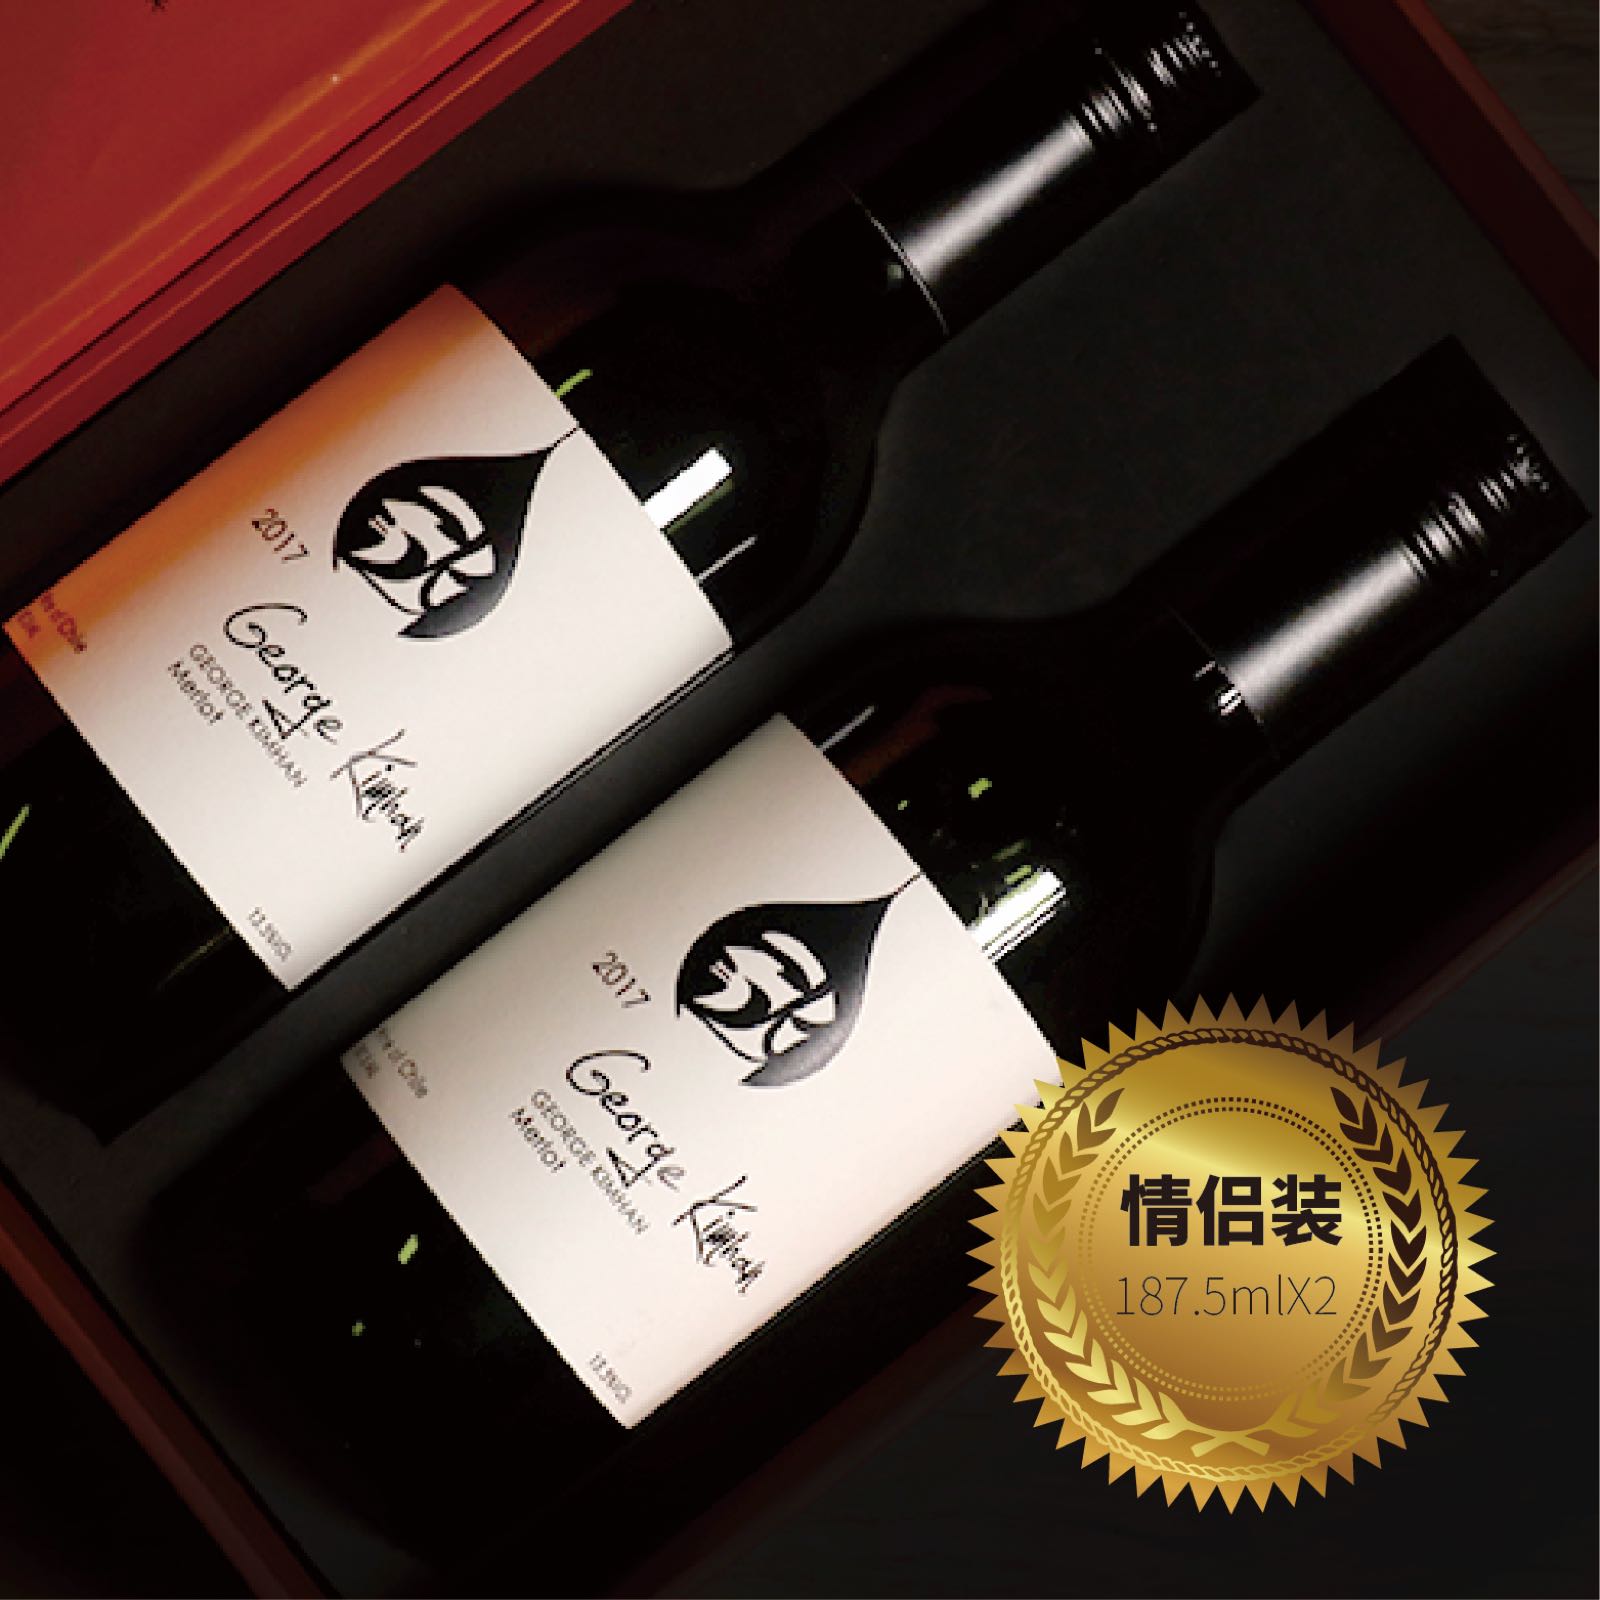 乔治金瀚gk小红酒2只礼盒装智利原装进口干红葡萄酒187.5ml瓶装